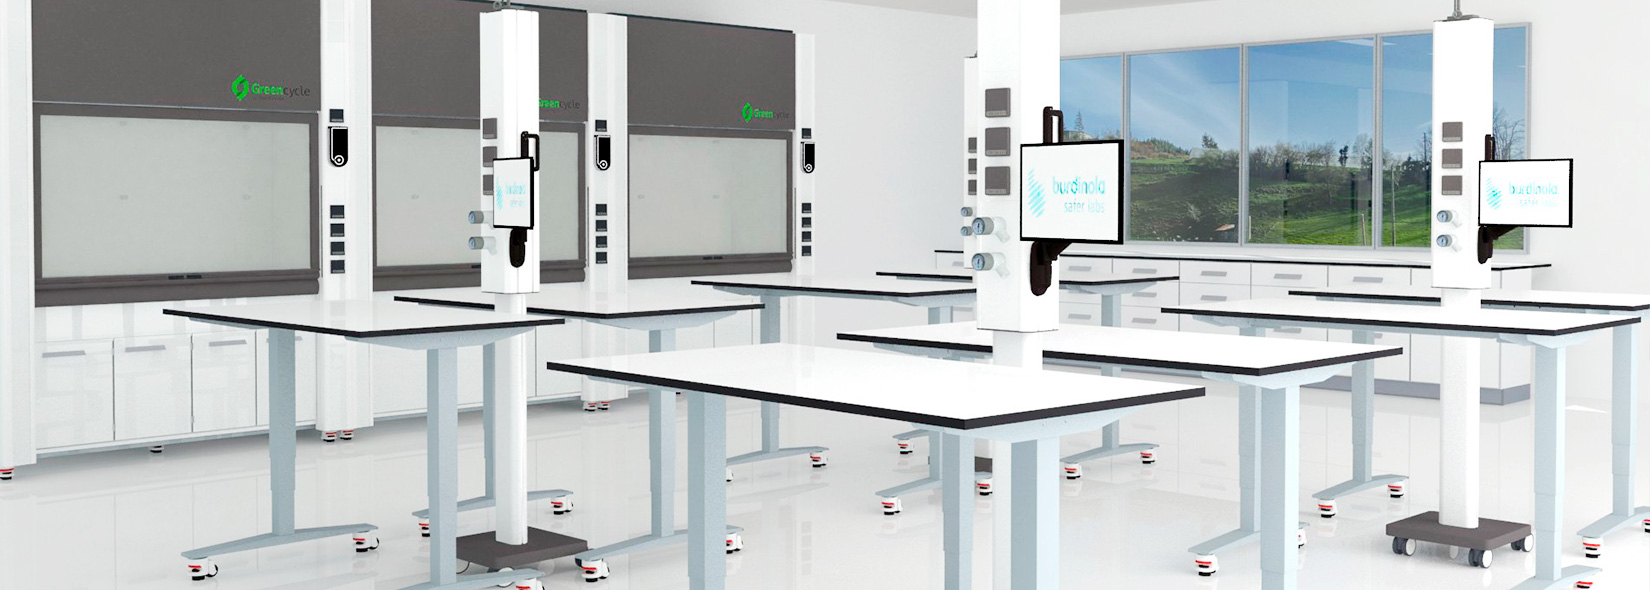 Image de l'intérieur d'un laboratoire conçu par Burdinola avec des sorbonnes mobiles à recirculation et des systèmes de services mobiles ou montés au plafond.